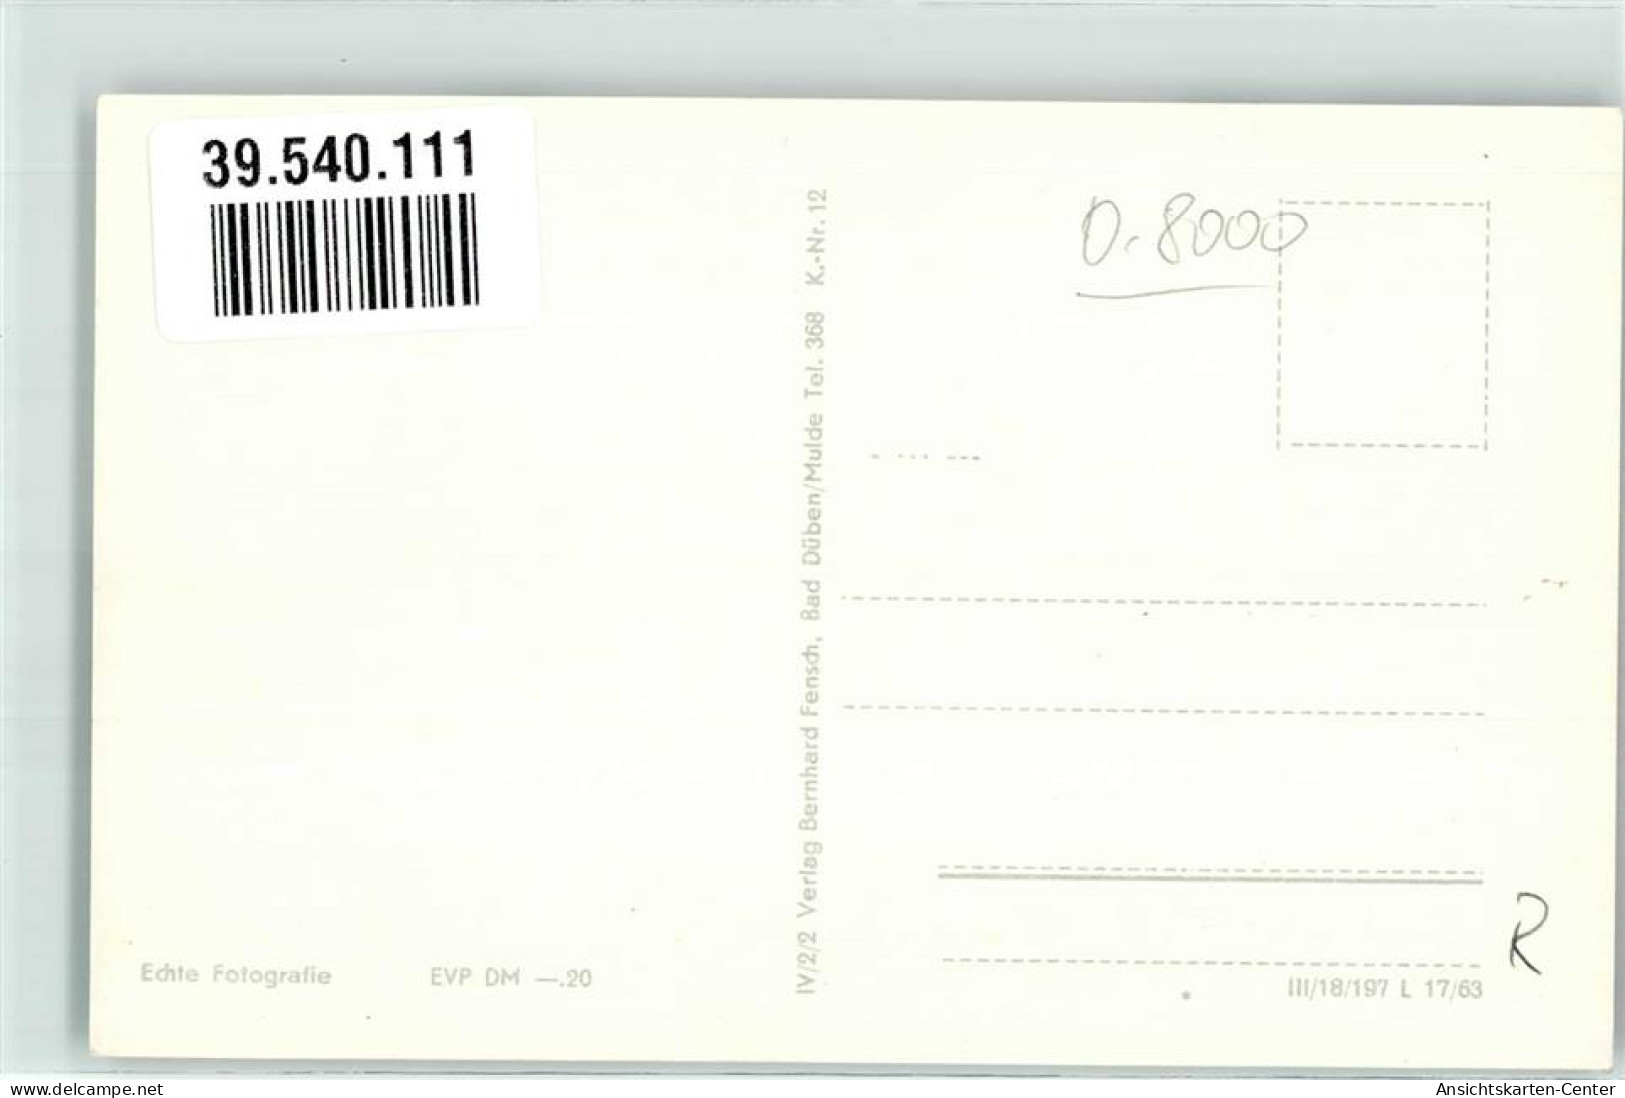 39540111 - Dessau-Rosslau - Dessau